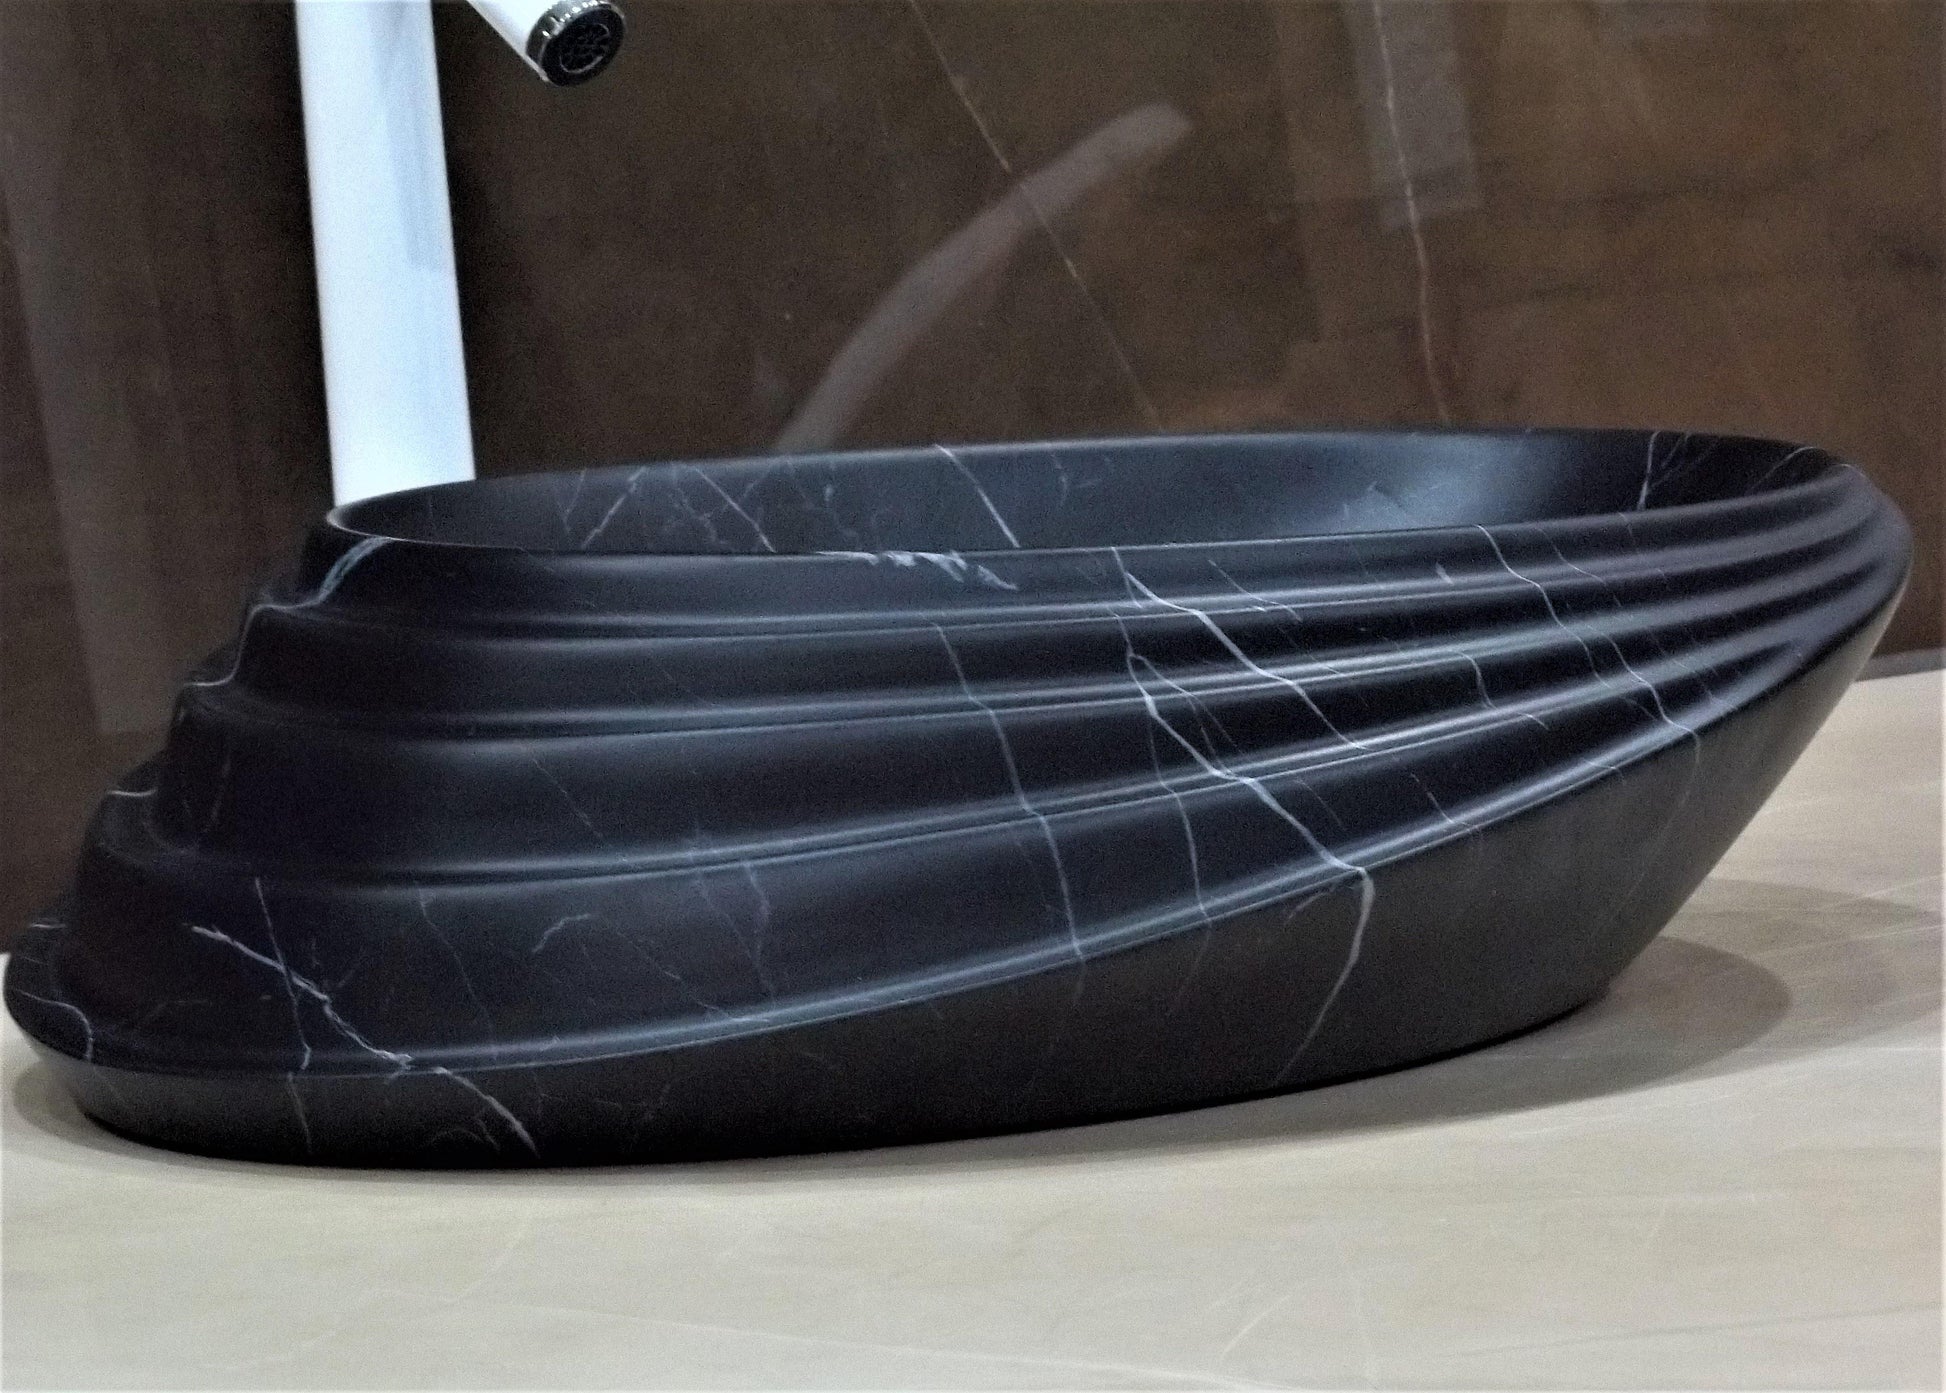 Table Top Premium Designer Ceramic Wash Basin/Vessel Oval Black Marble Finish Satin Designer for Bathroom 20 x 15 x 6 Inch (Black Color) - Bath Outlet